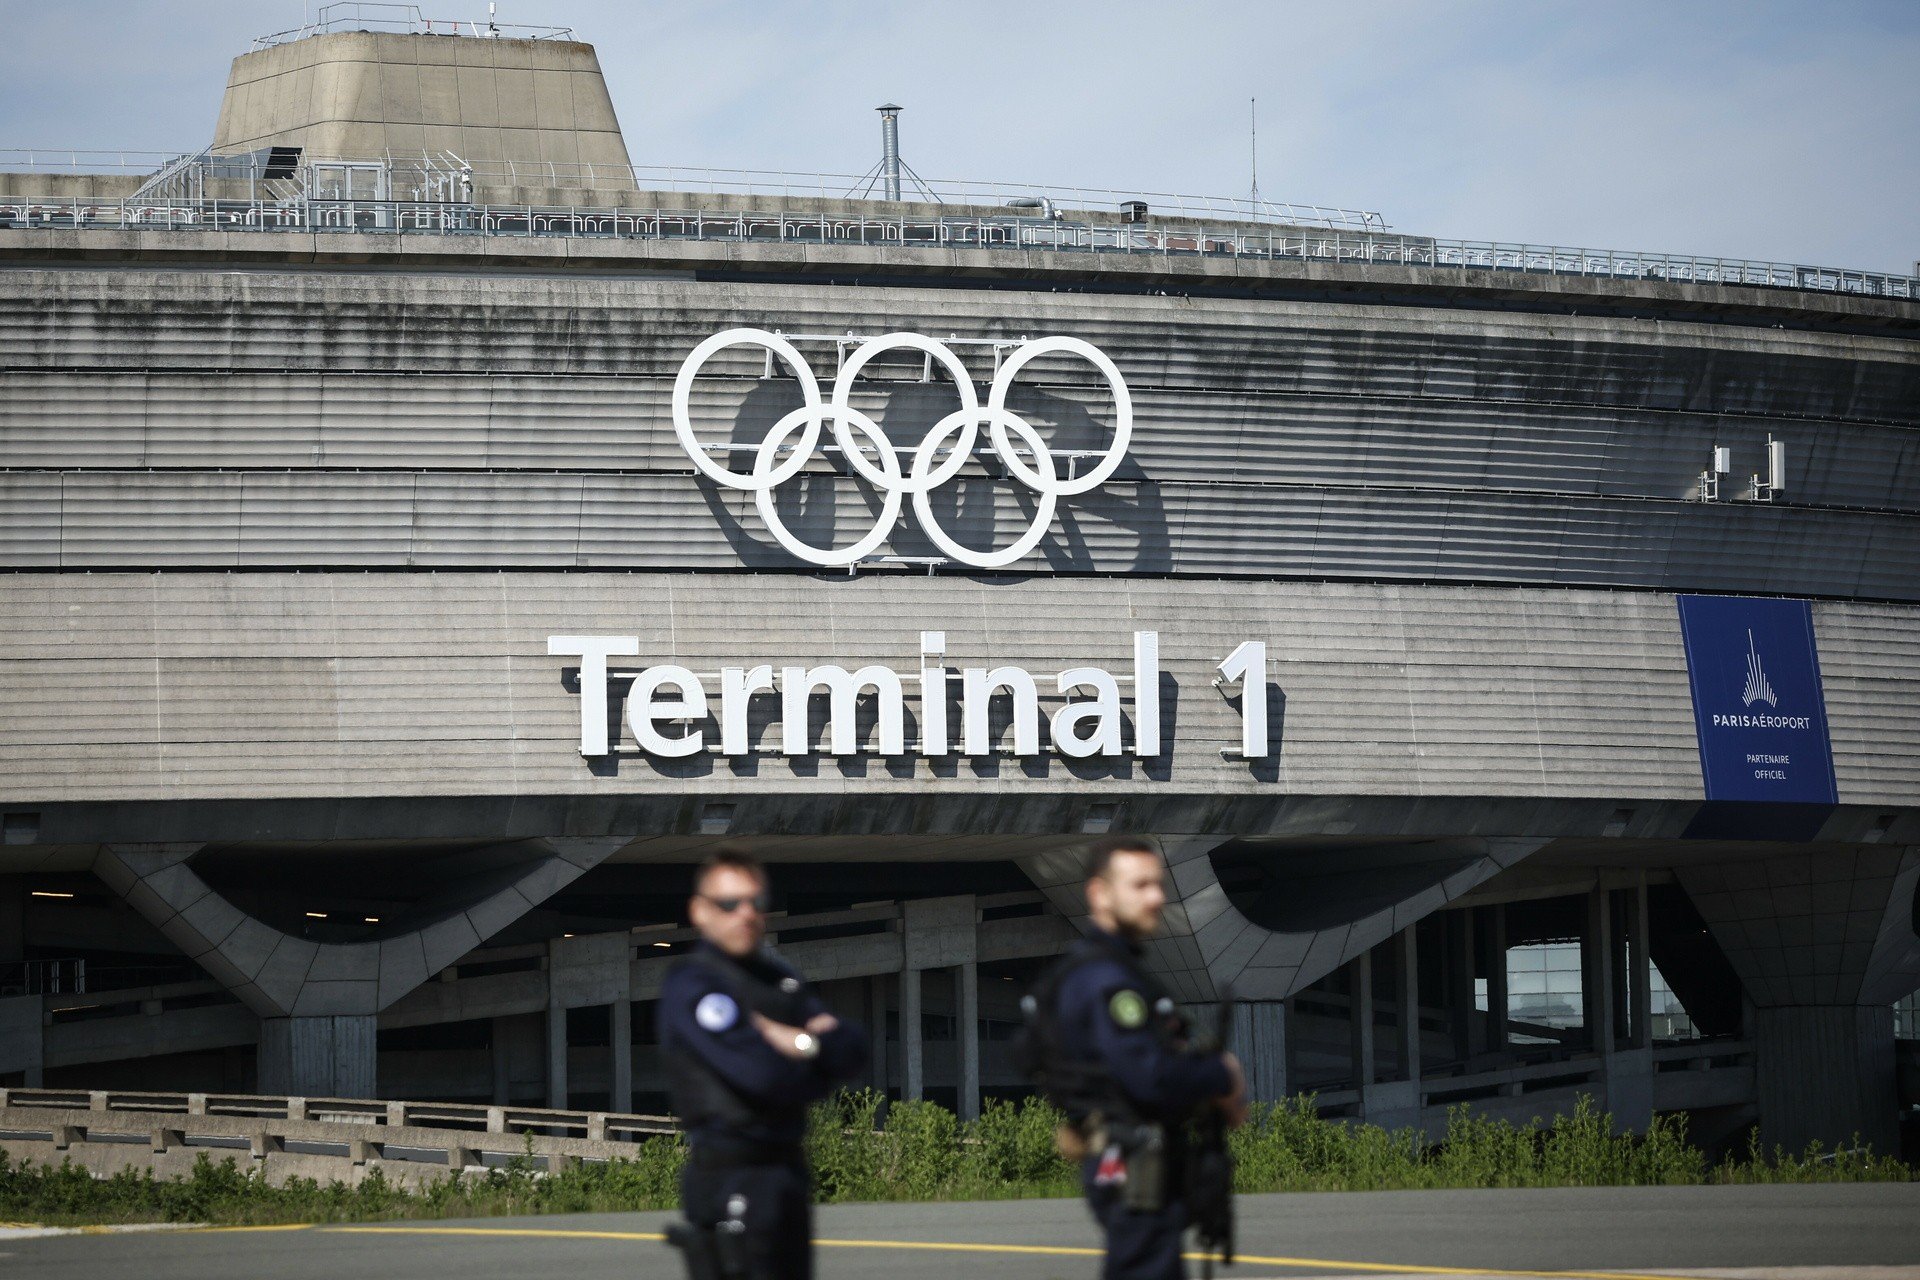 Przestrzeń powietrzna Paryża zamknięta z powodów bezpieczeństwa podczas ceremonii igrzysk.